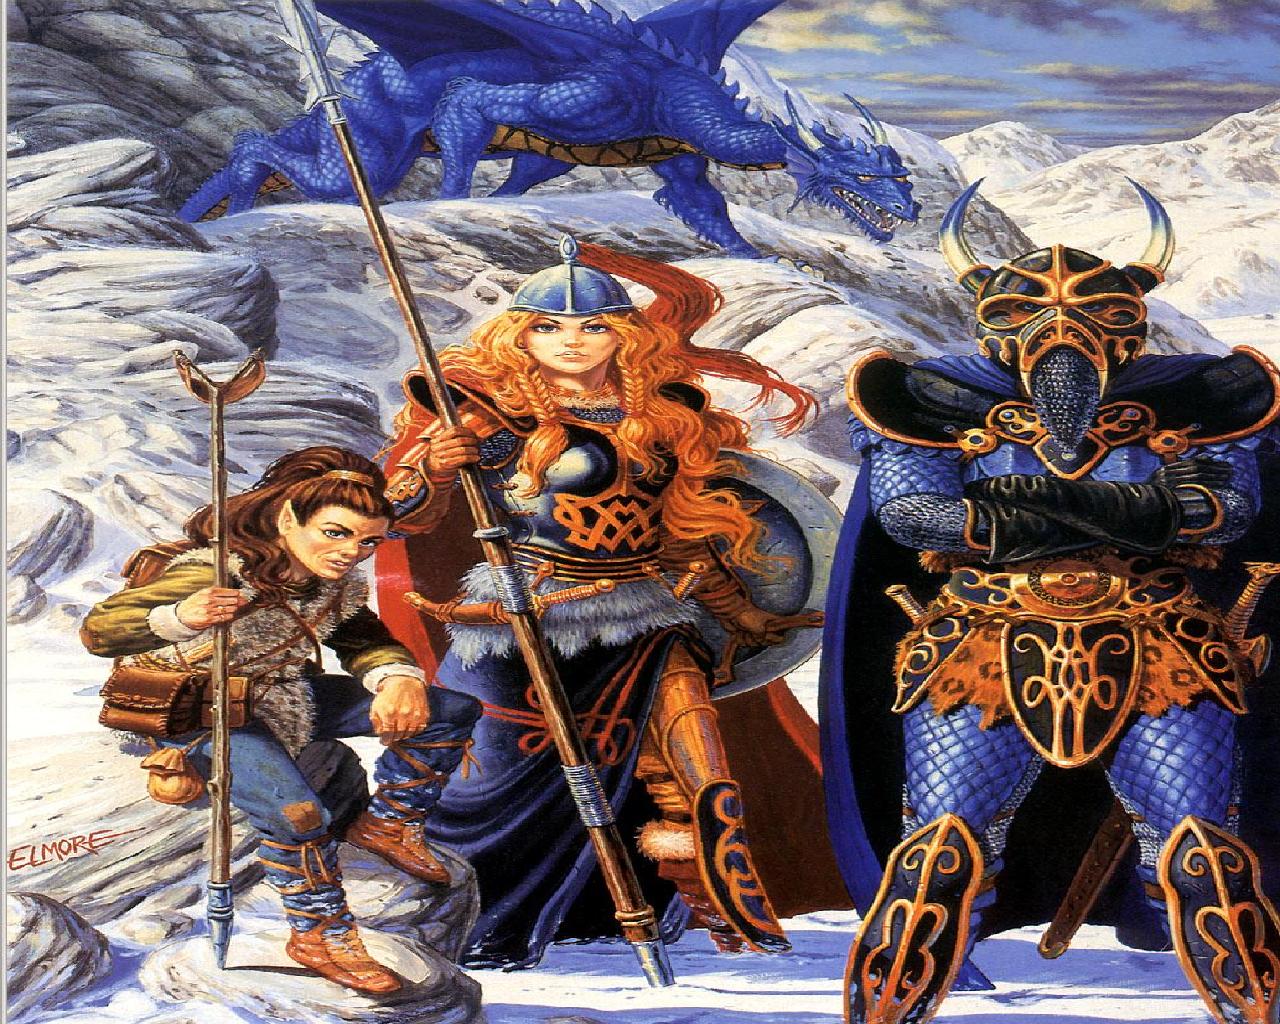 DragonlanceDragons of Winter Night wallpaper   ForWallpapercom